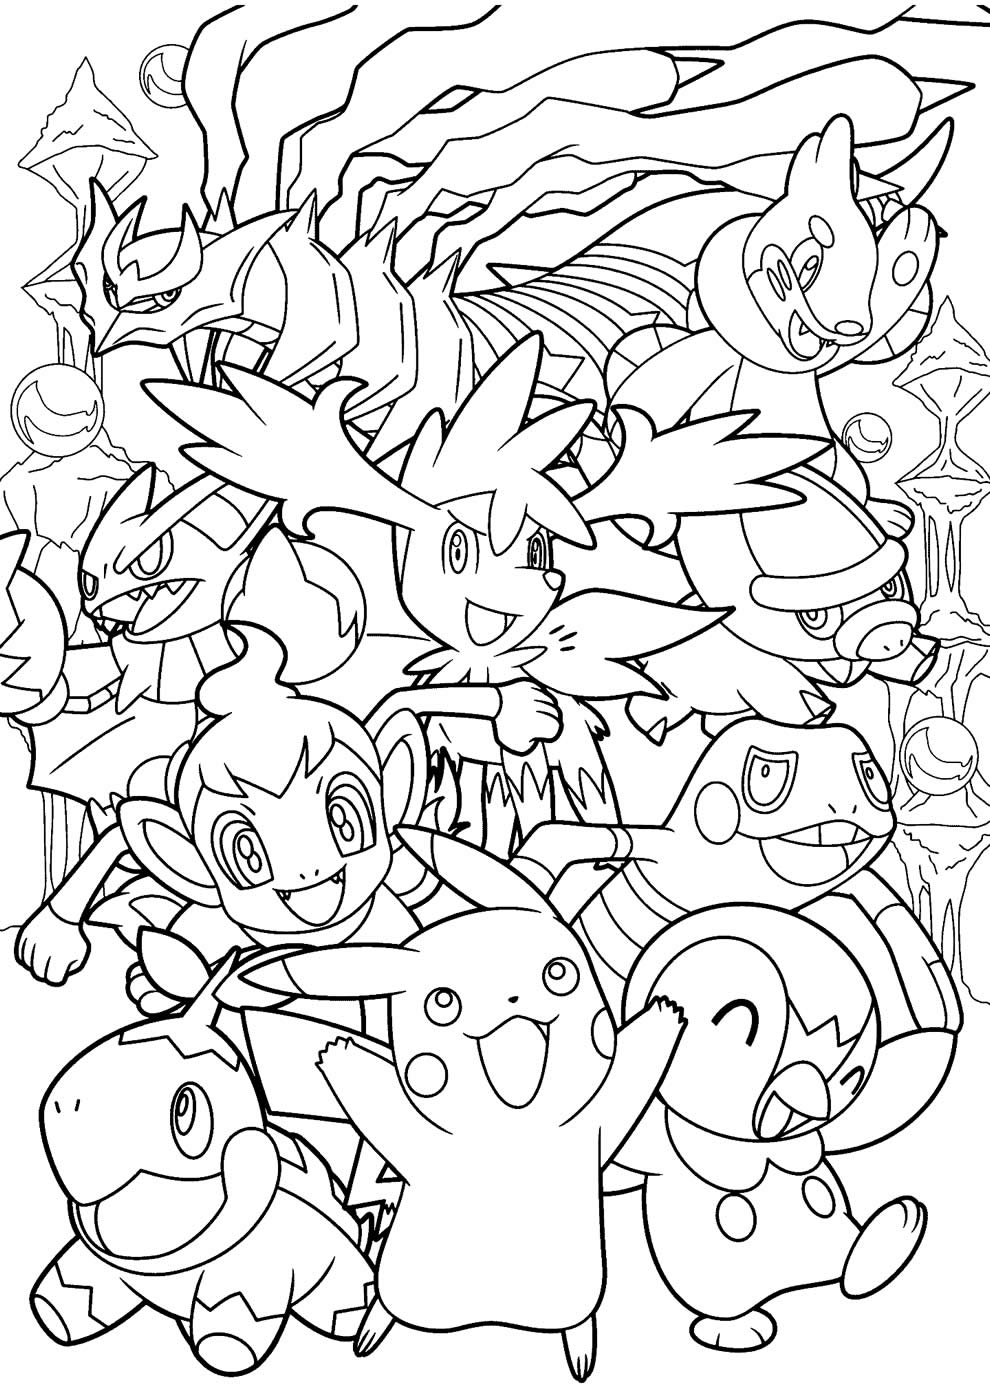 Desenhos do Pokémon para imprimir e pintar!